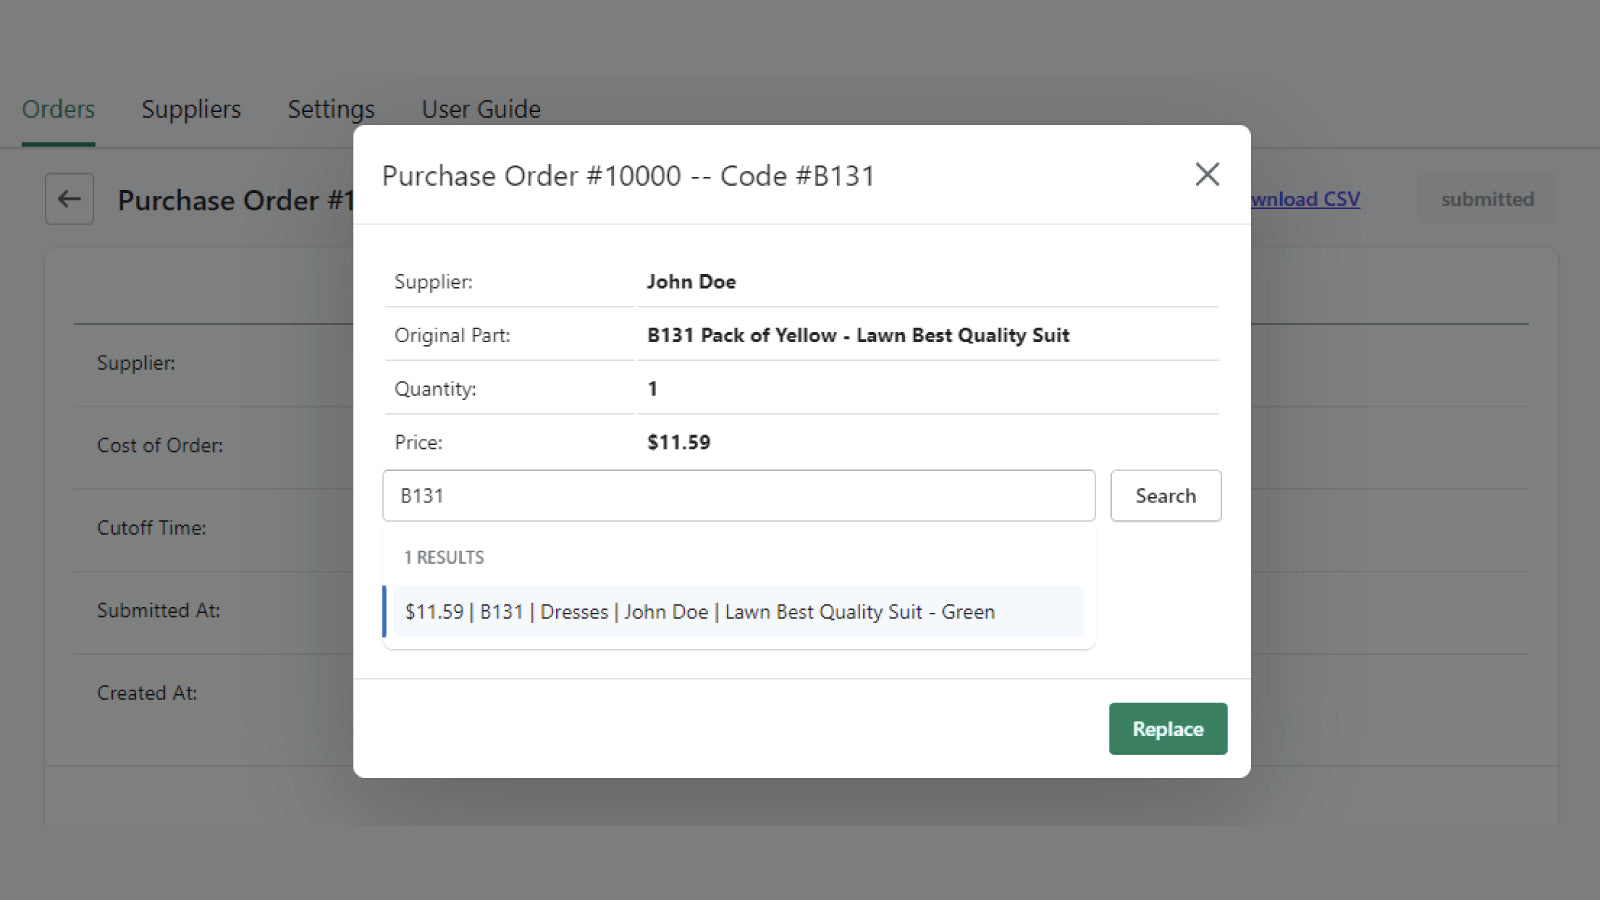 Vendor Notify ‑ Order Export Screenshot